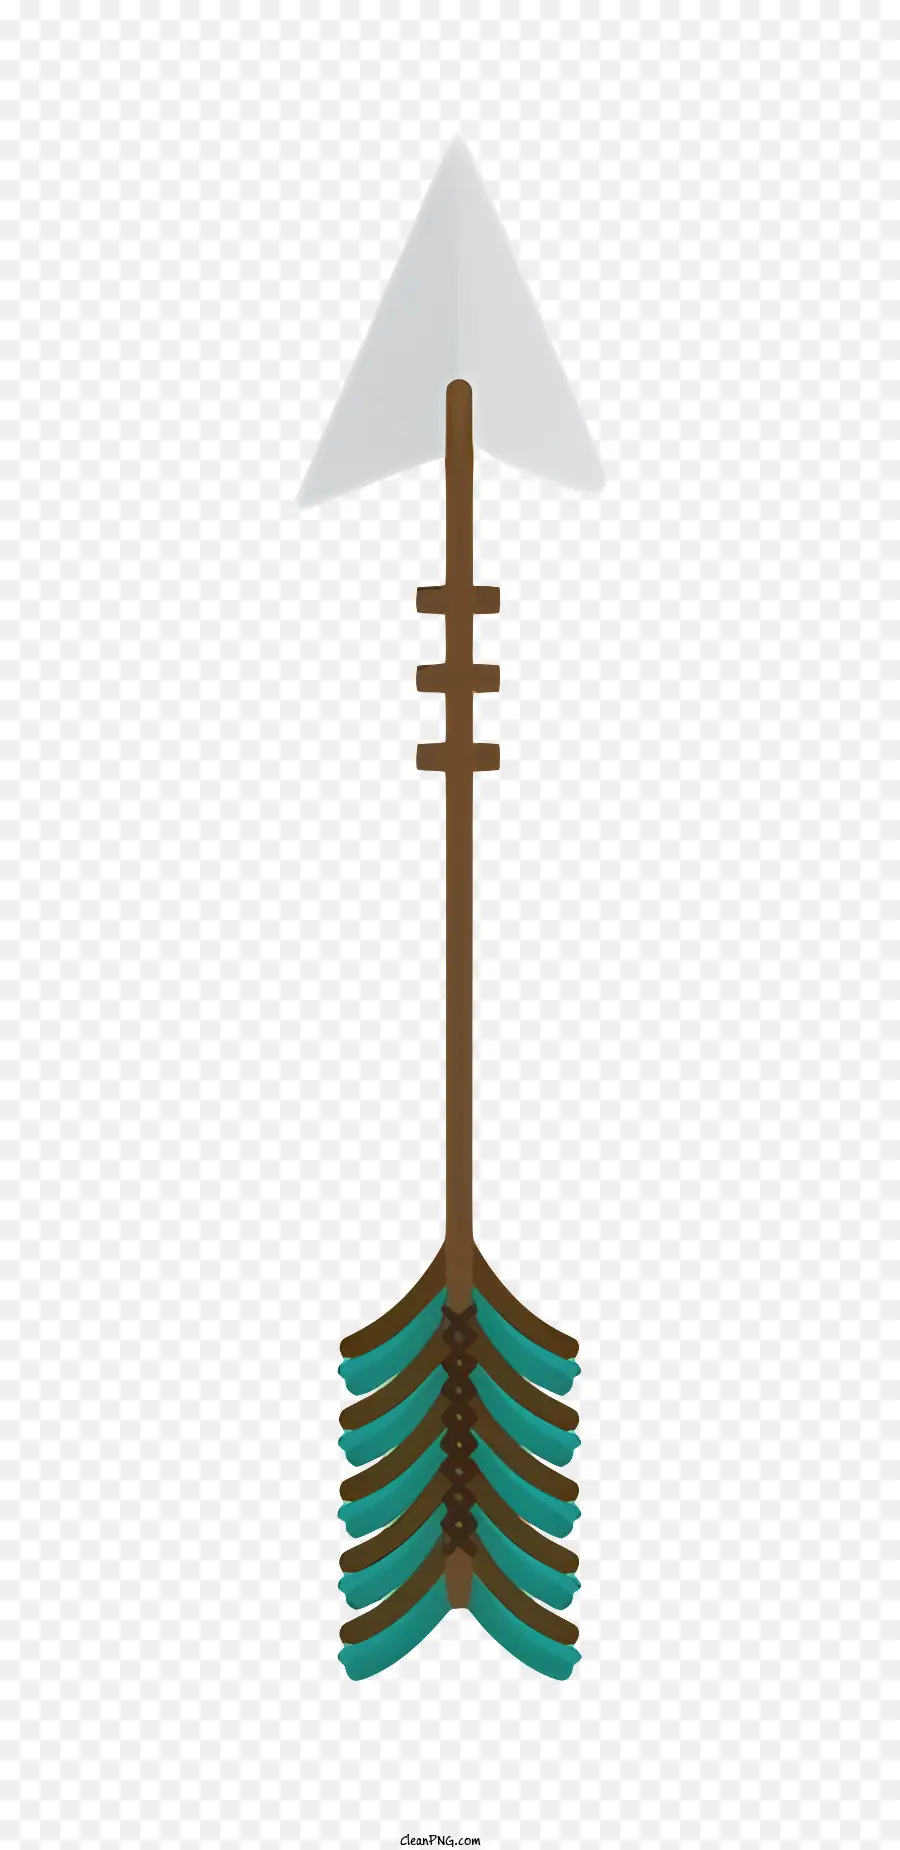 Wooden arrow